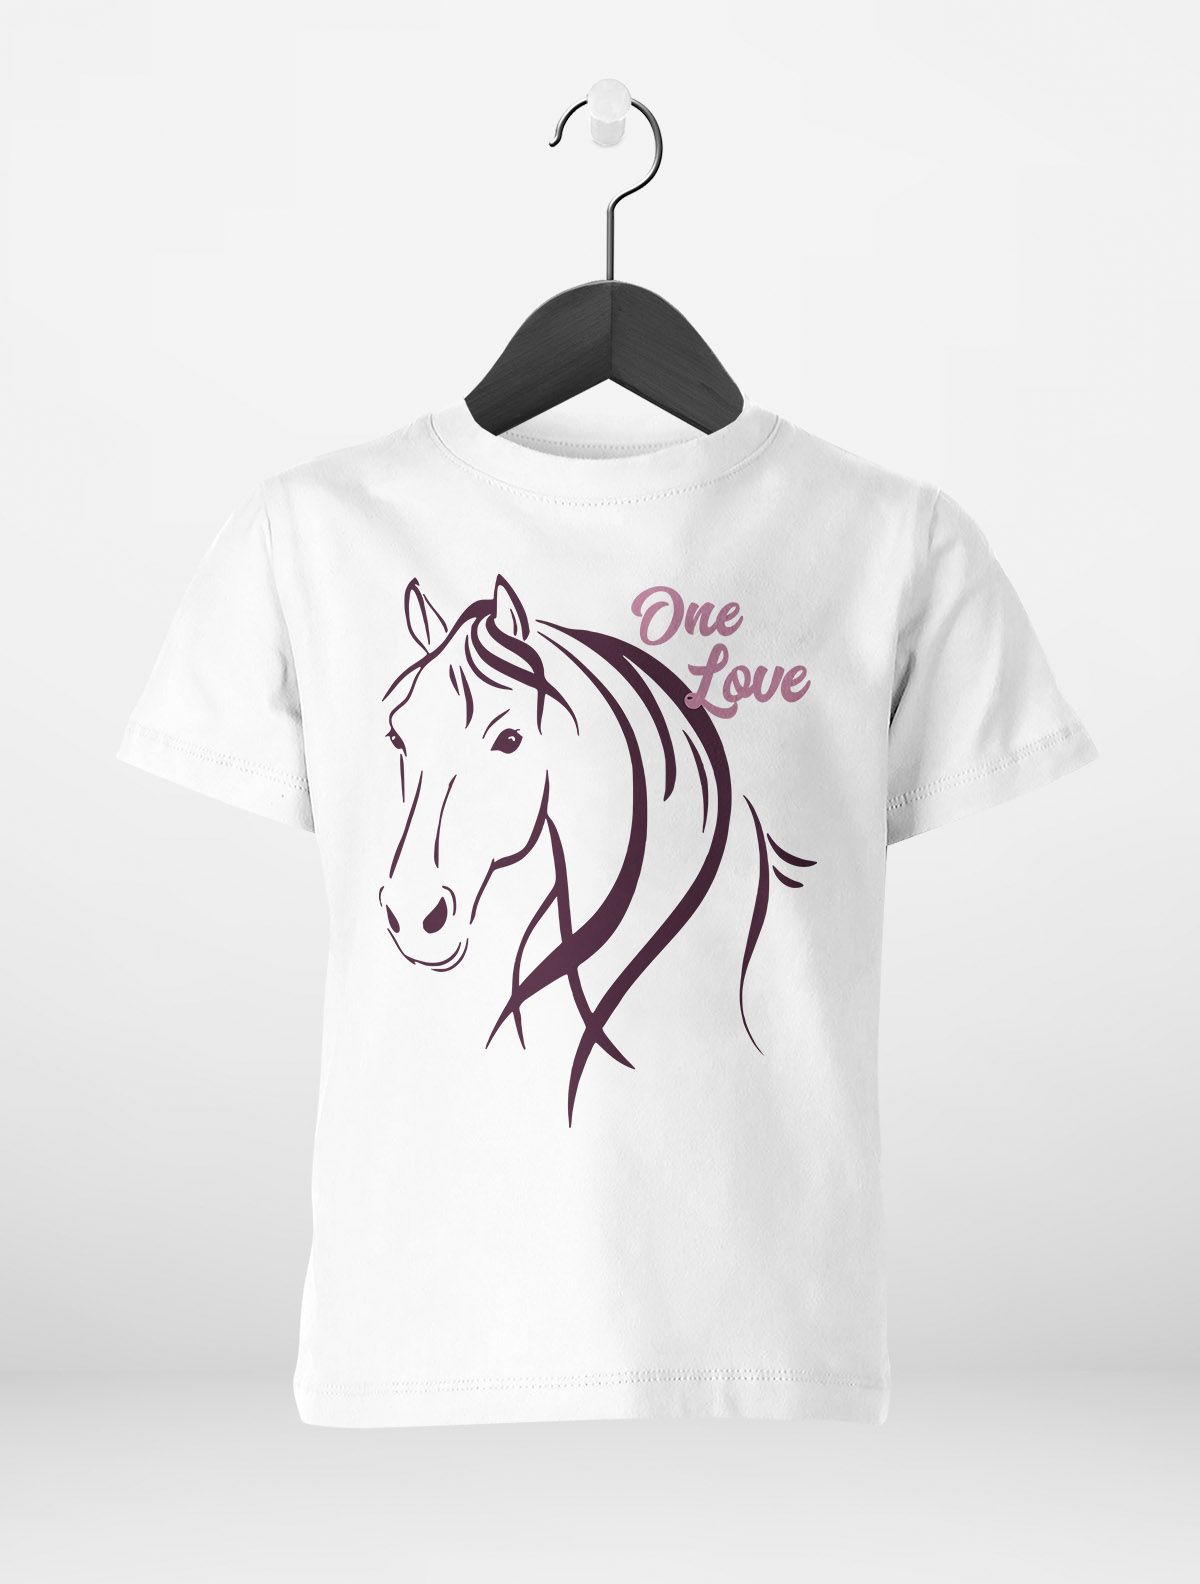 Mädchen Pferdeliebhaber Geschenk Kinder | Reiten T-Shirt Mädchen für eBay Pferde-Motiv